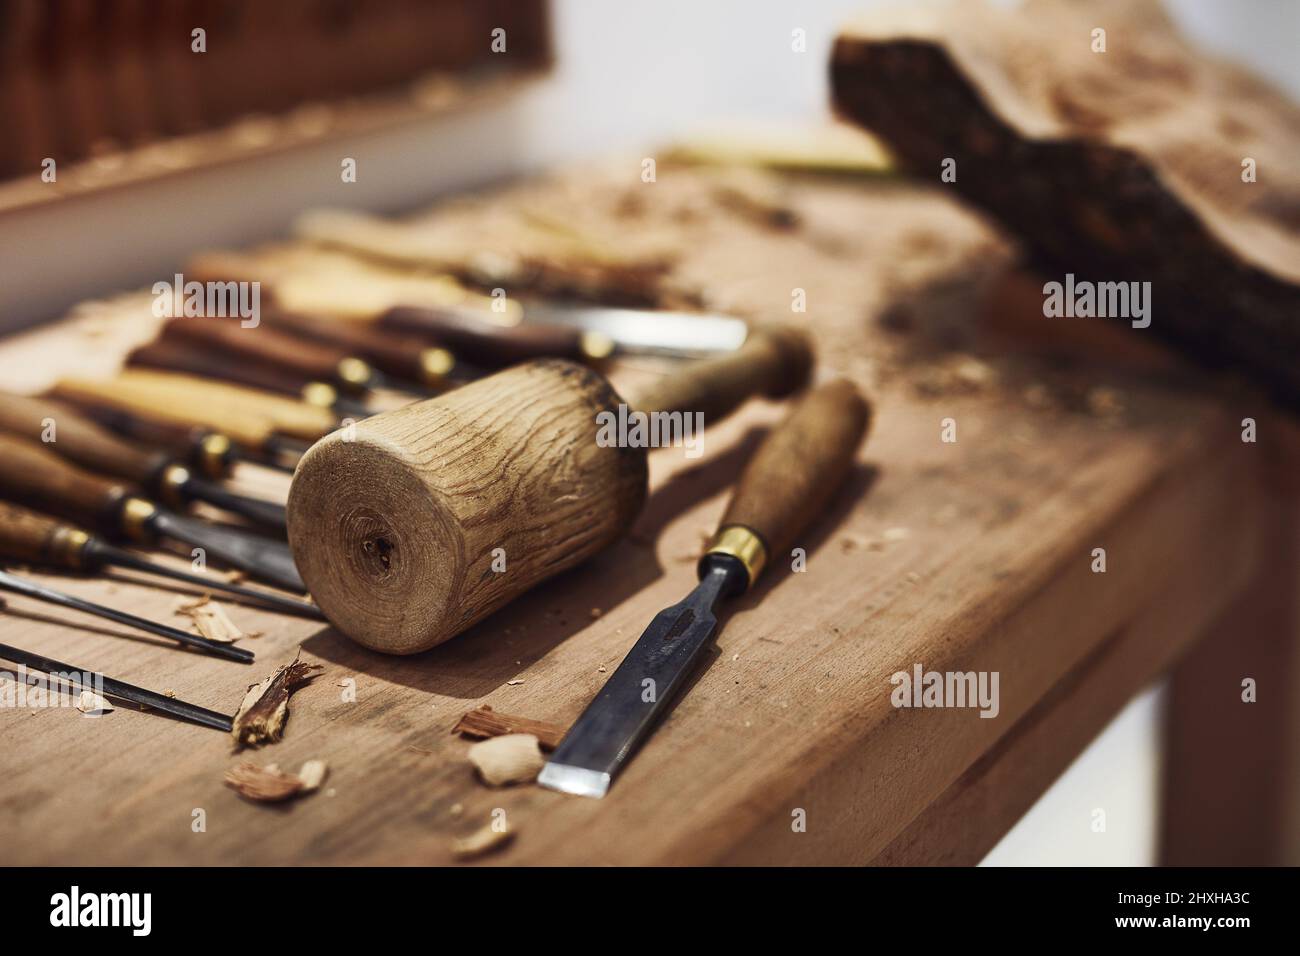 Die einfachsten Tools können Menschen befähigen, großartige Dinge zu tun. Ausgeschnittene Aufnahme des Innenausschnittes einer Werkstatt von Kunsthandwerkerinnen. Stockfoto